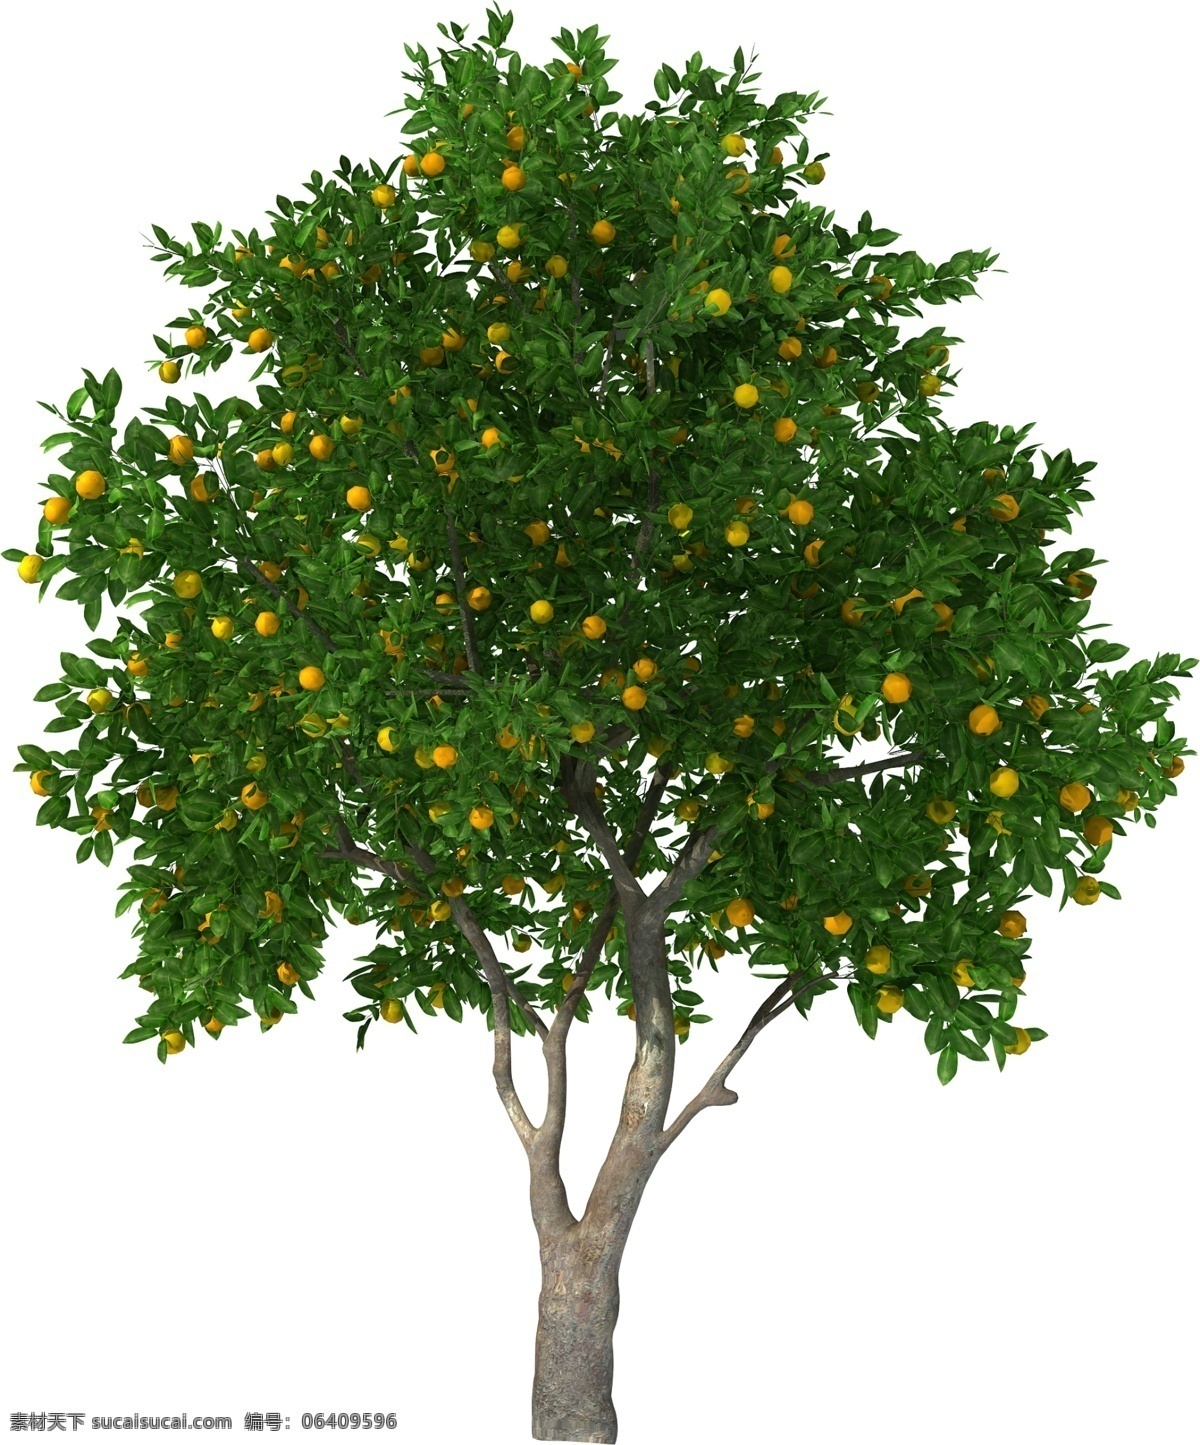 果树 橘柑 橘子树 乔木 大树 环境设计 效果图